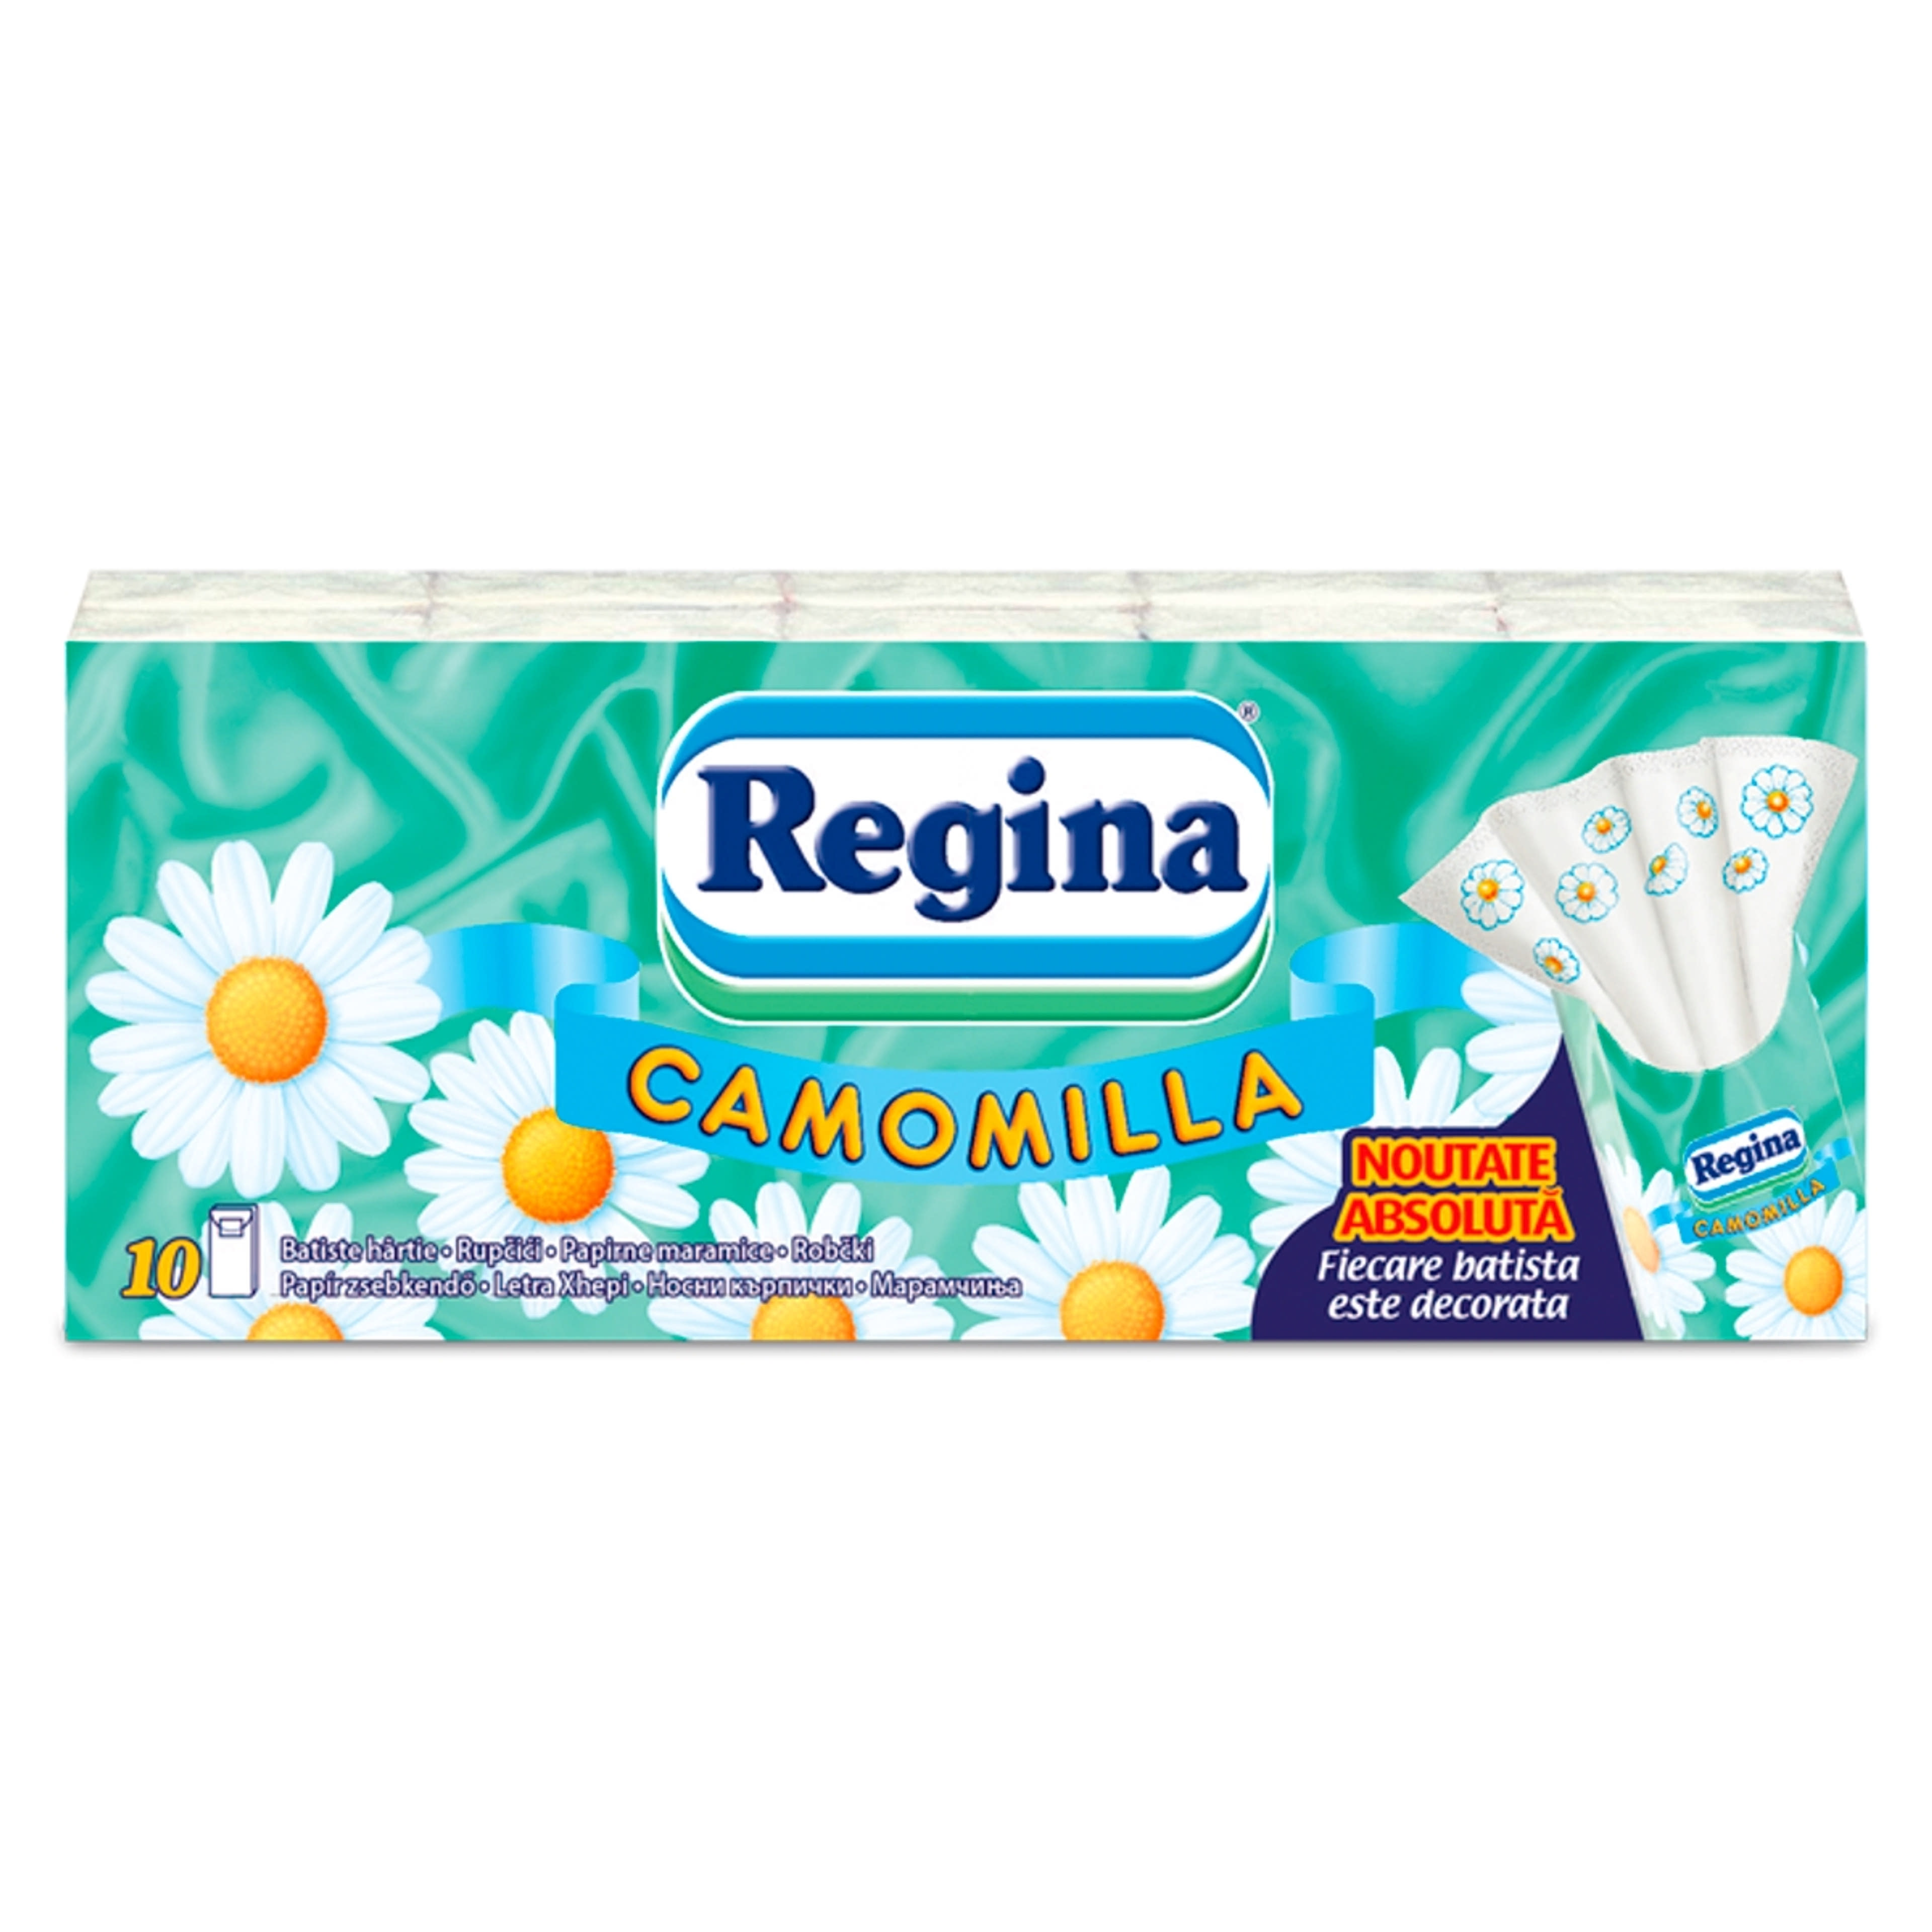 Regina Camomilla papírzsebkendő, 4 rétegű (10x9 db) - 90 db-1